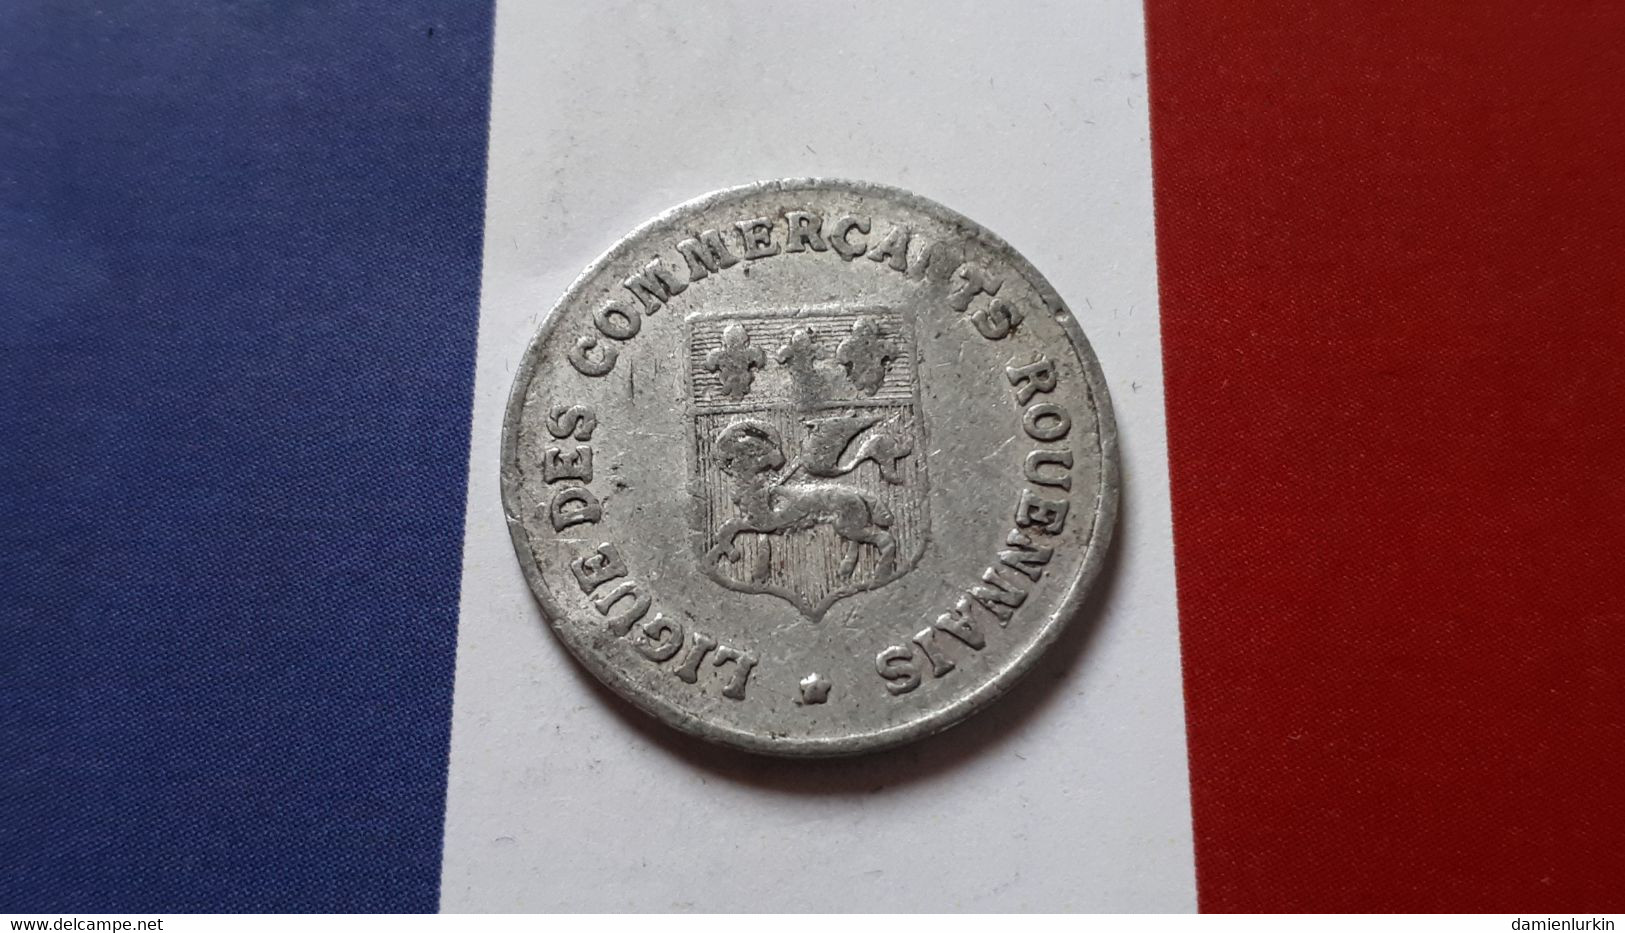 FRANCE ROUEN 10 CENTIMES NECESSITE 1920 LIGUE DES COMMERCANTS FRAPPE MEDAILLE - Monétaires / De Nécessité